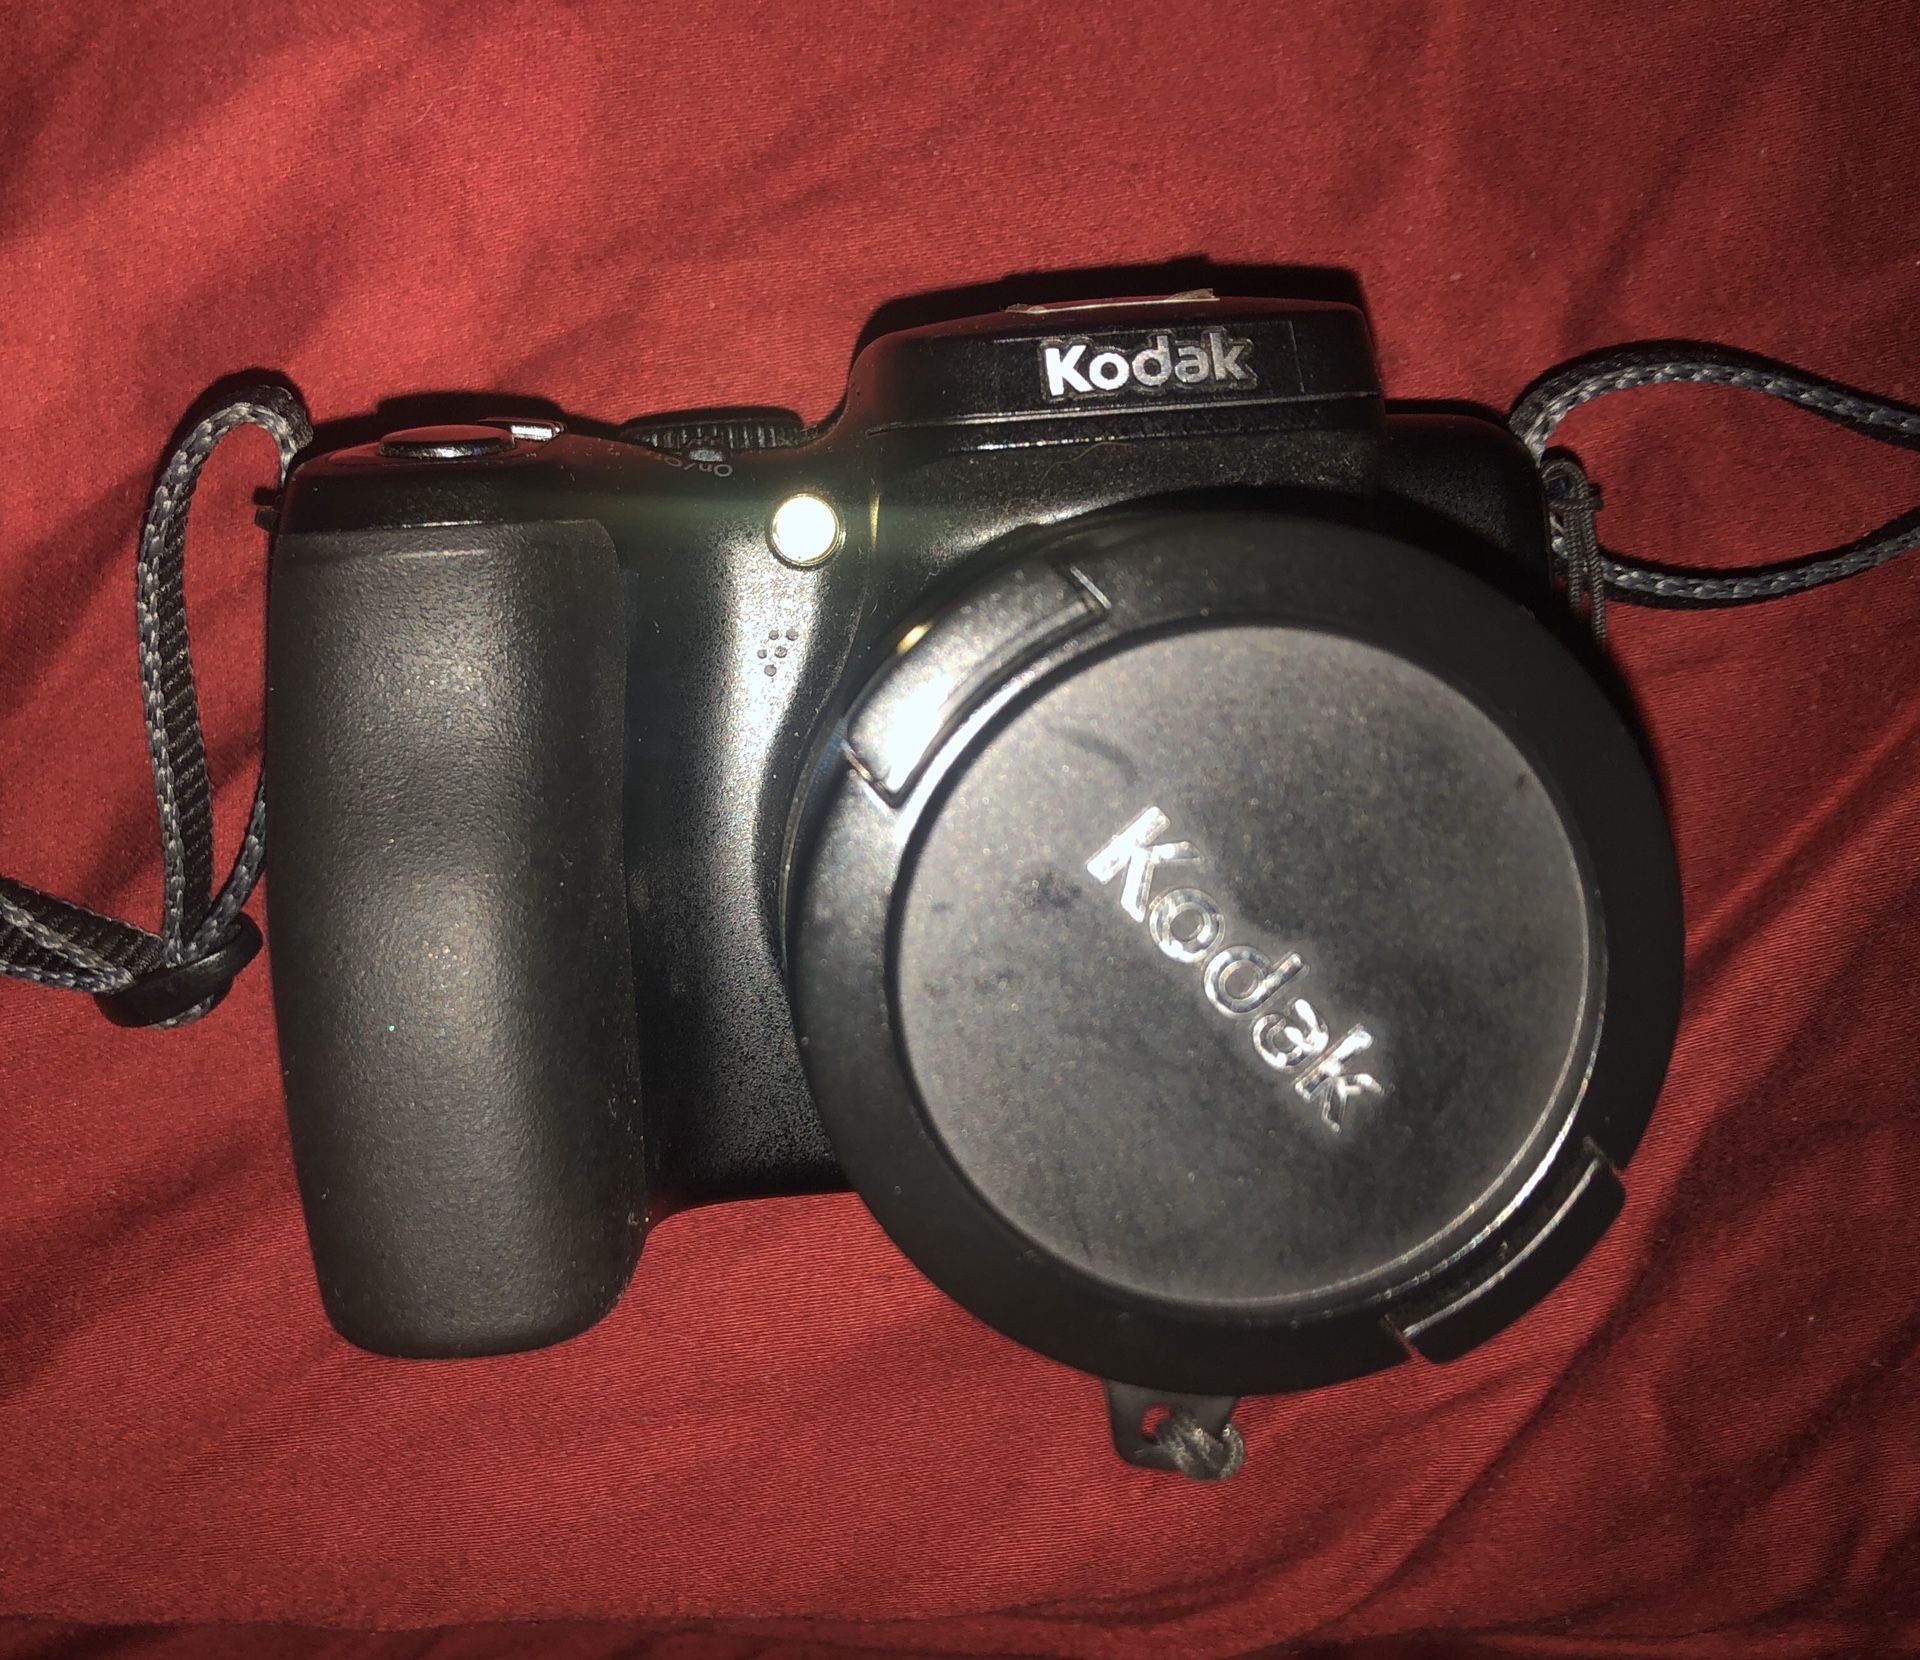 19$Kodak 12X IS Image stabilizer 8.1 camera